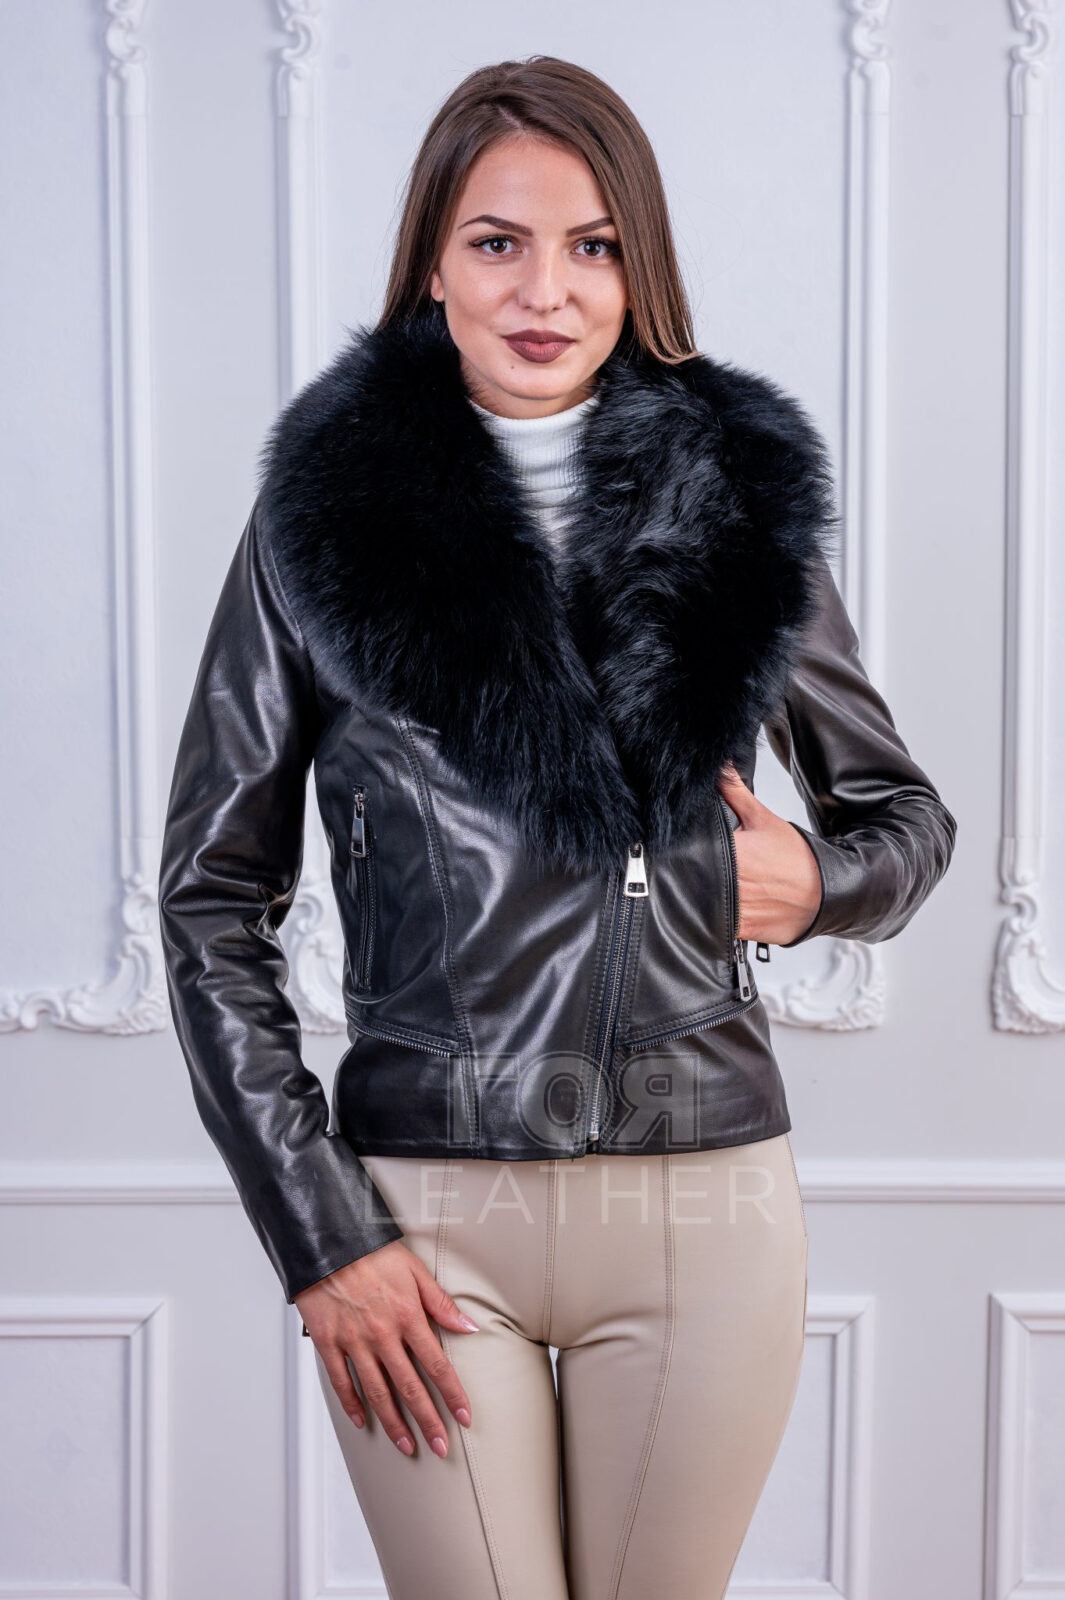 Дамско кожено яке с подвижна яка от лисица от ГОЯ Leather. Втален дамски модел кожено яке с подвижна яка от лисица.